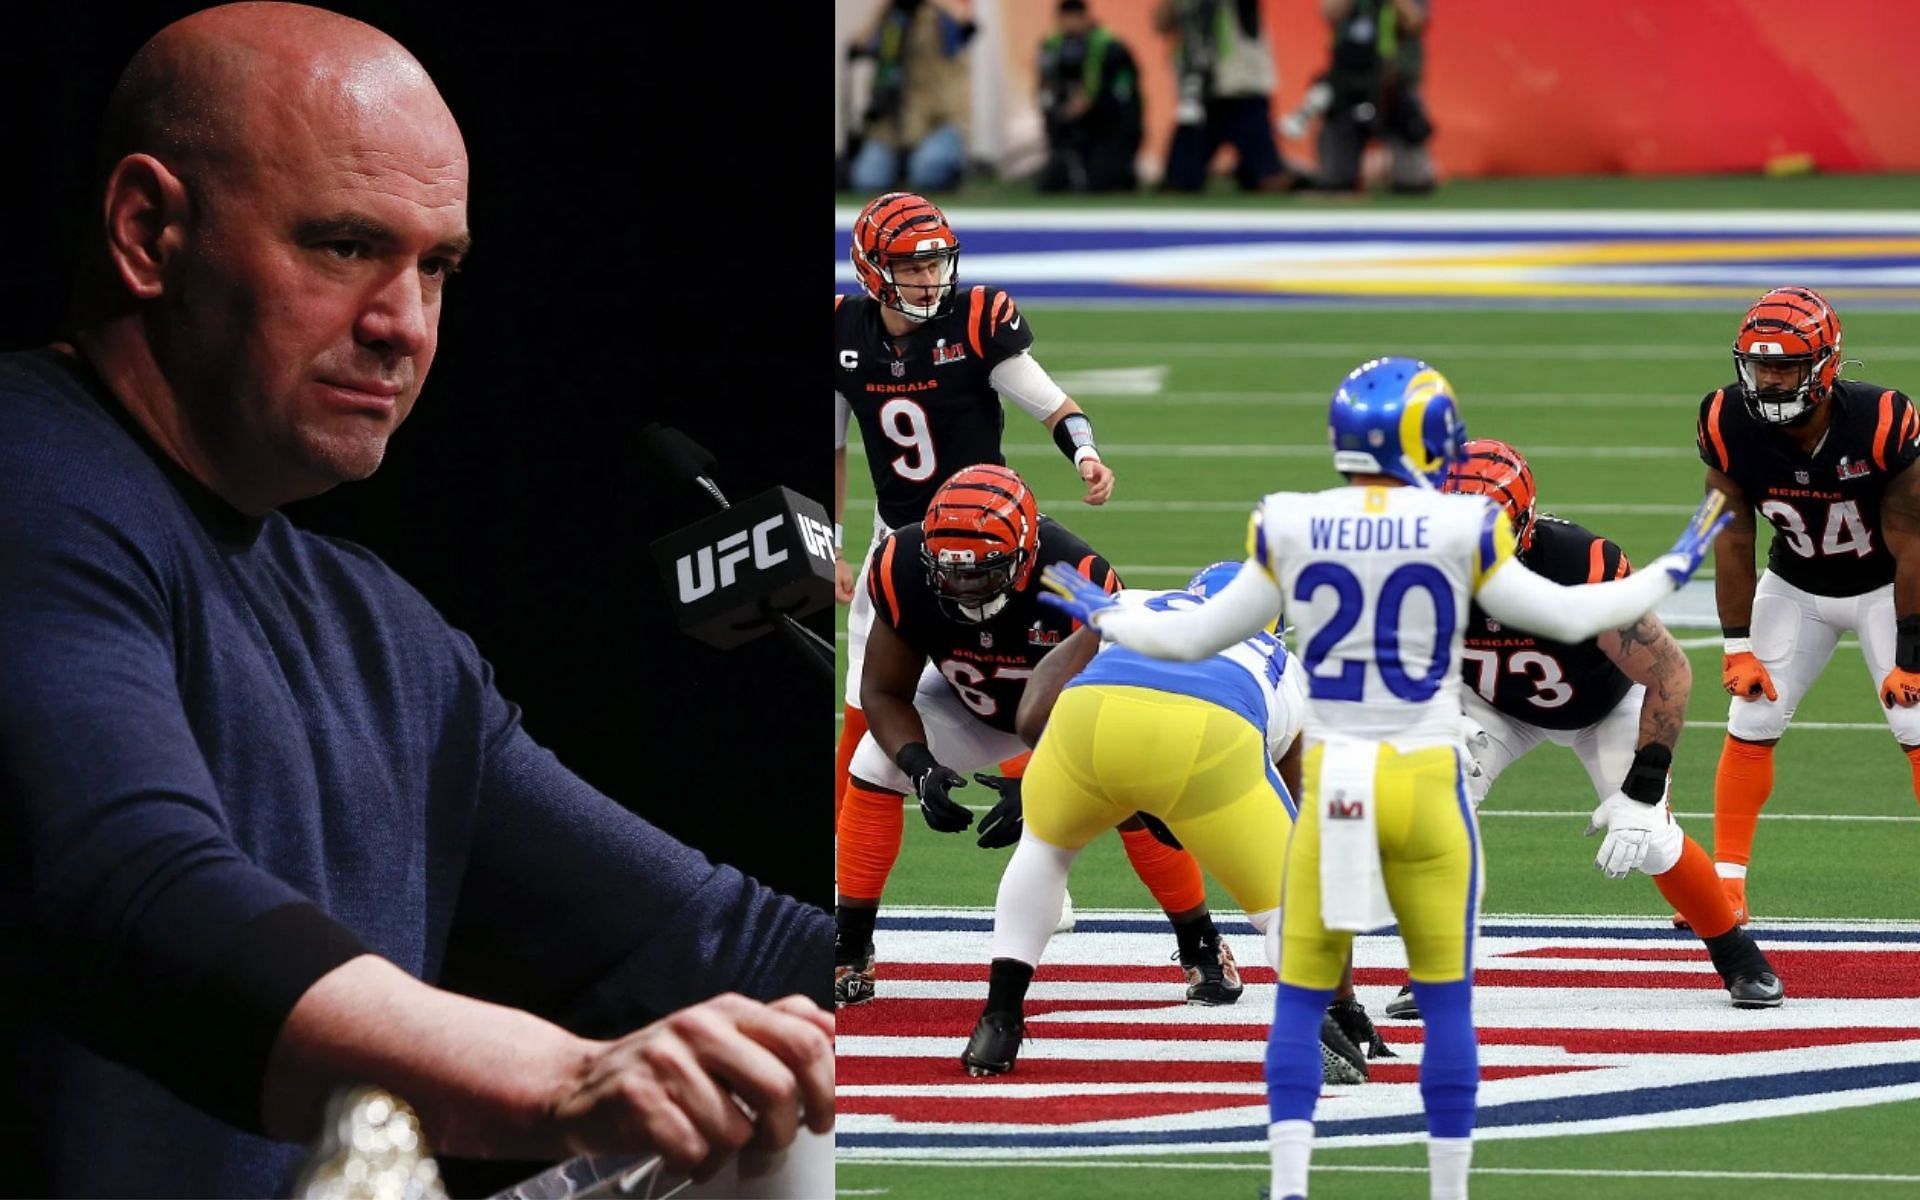  Super Bowl winner exposes media bias in strong stance against Dana White slap incident